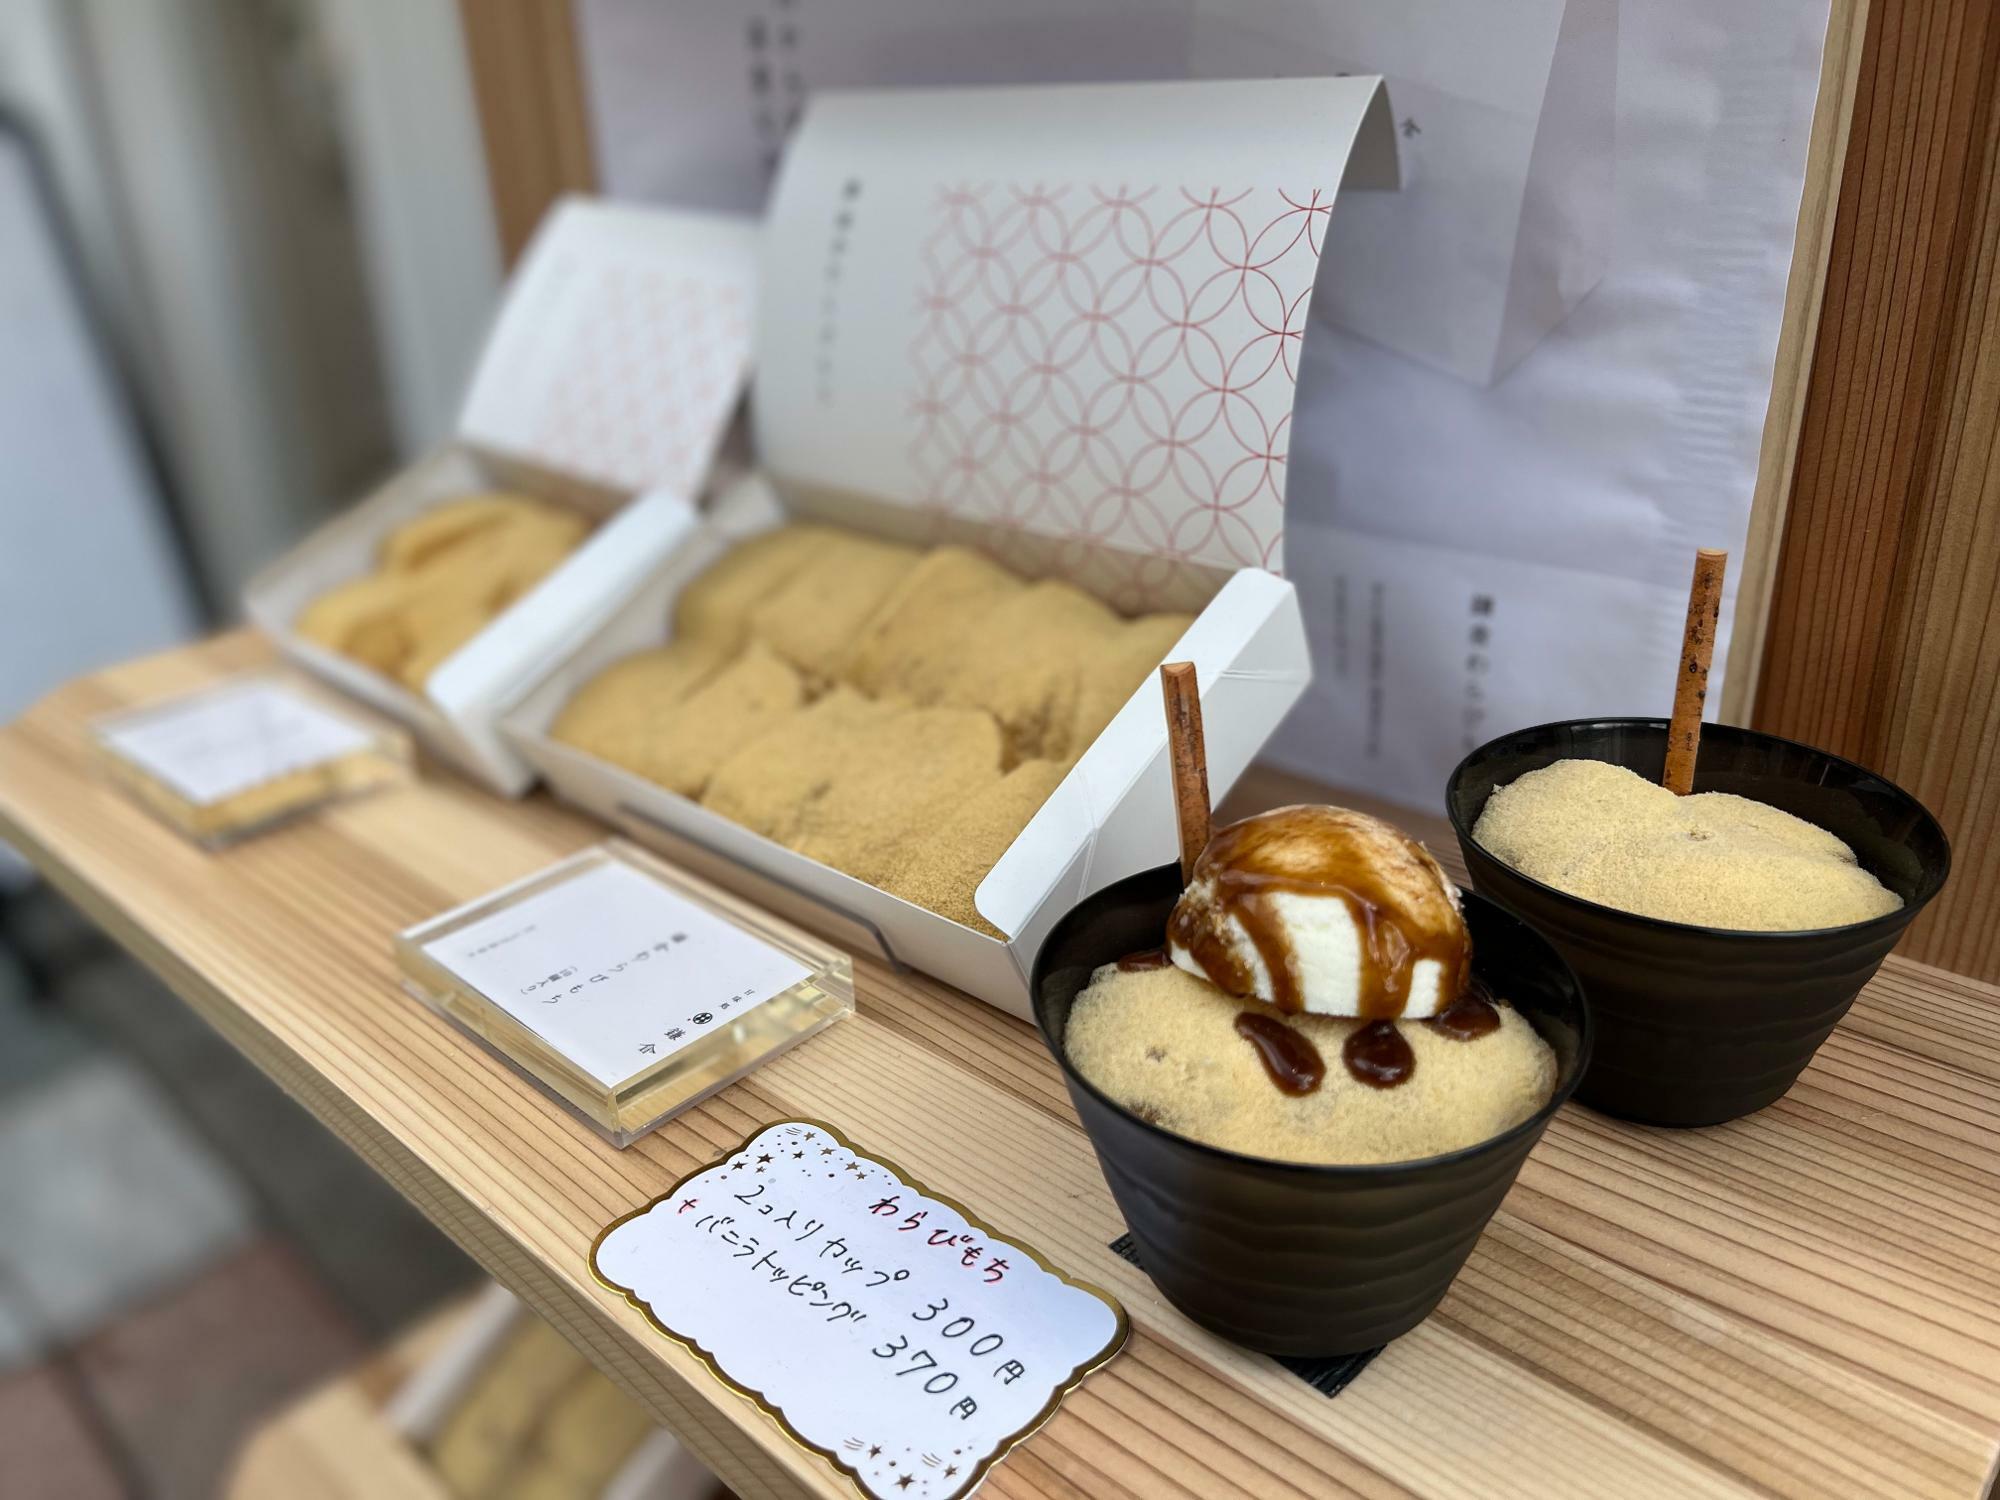 定番の鎌倉わらびもちと、アイスのトッピング。食欲をそそります。